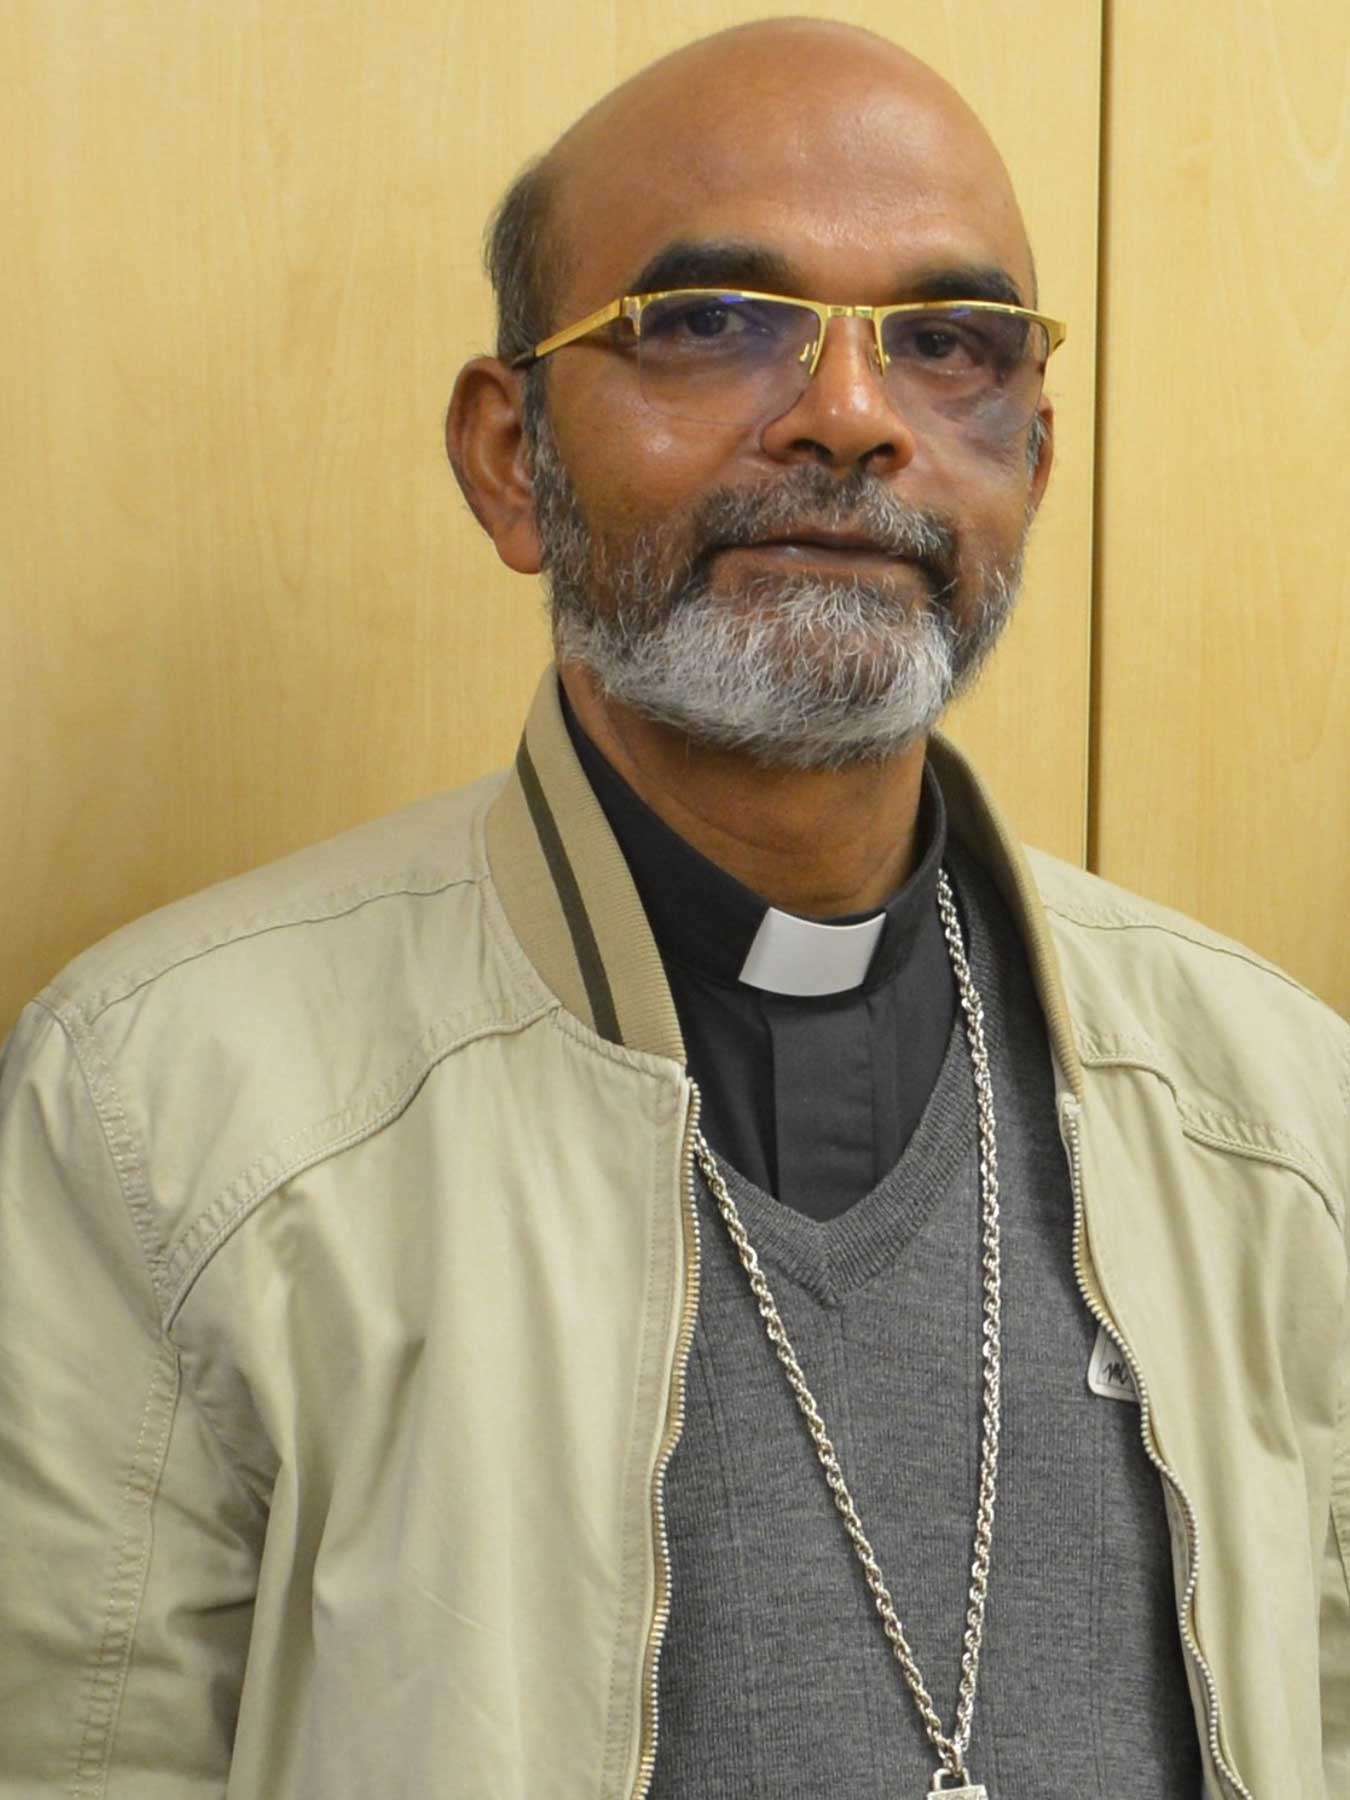 Bischof Vargehese Thottamkara, Apostolischer Vikar von Nekemete/Äthiopien